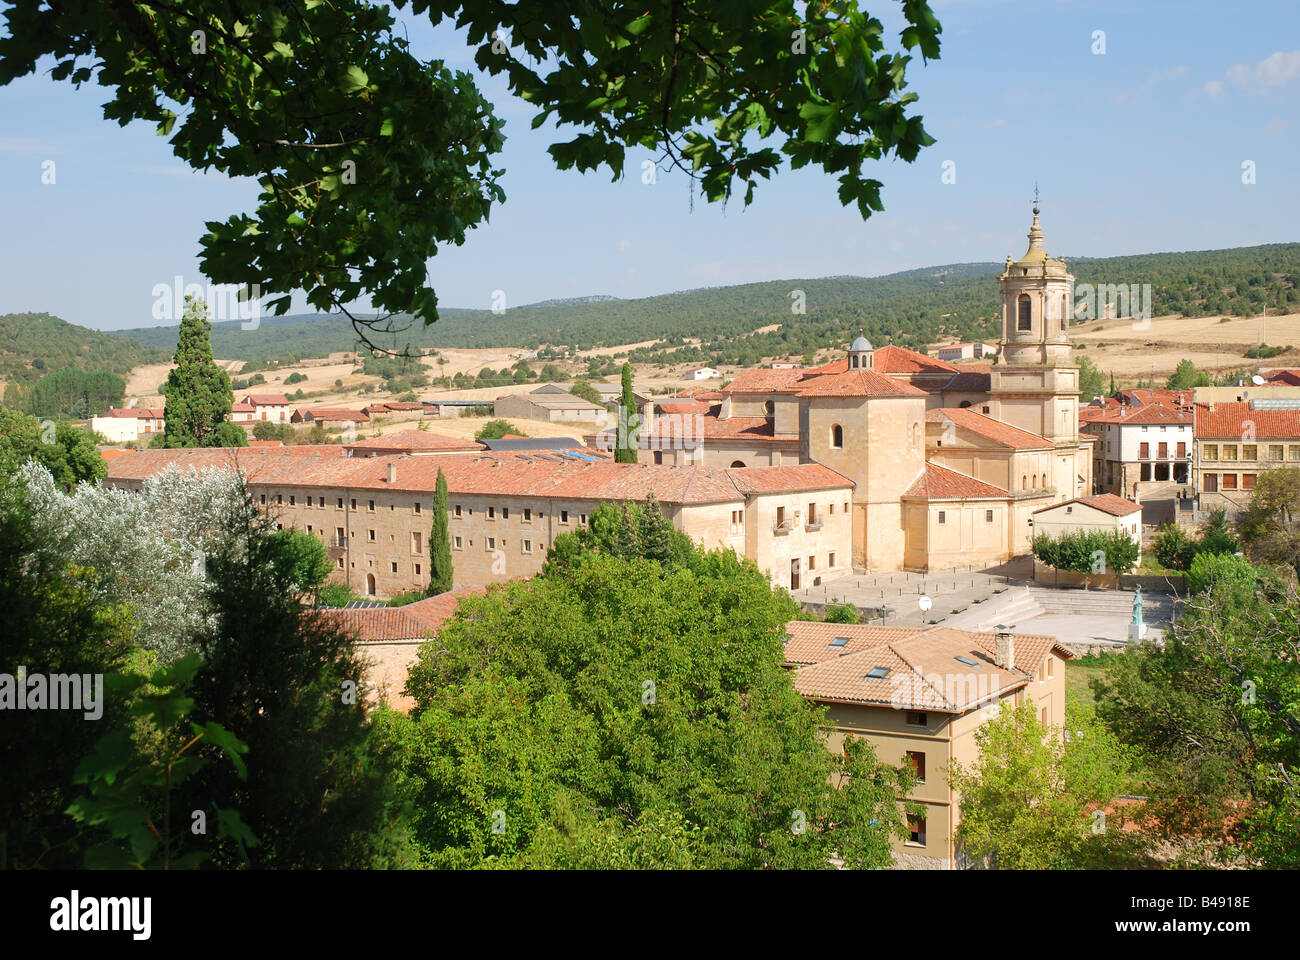 Santo Domingo de Silos. Burgos province. Castile Leon. Spain. Stock Photo